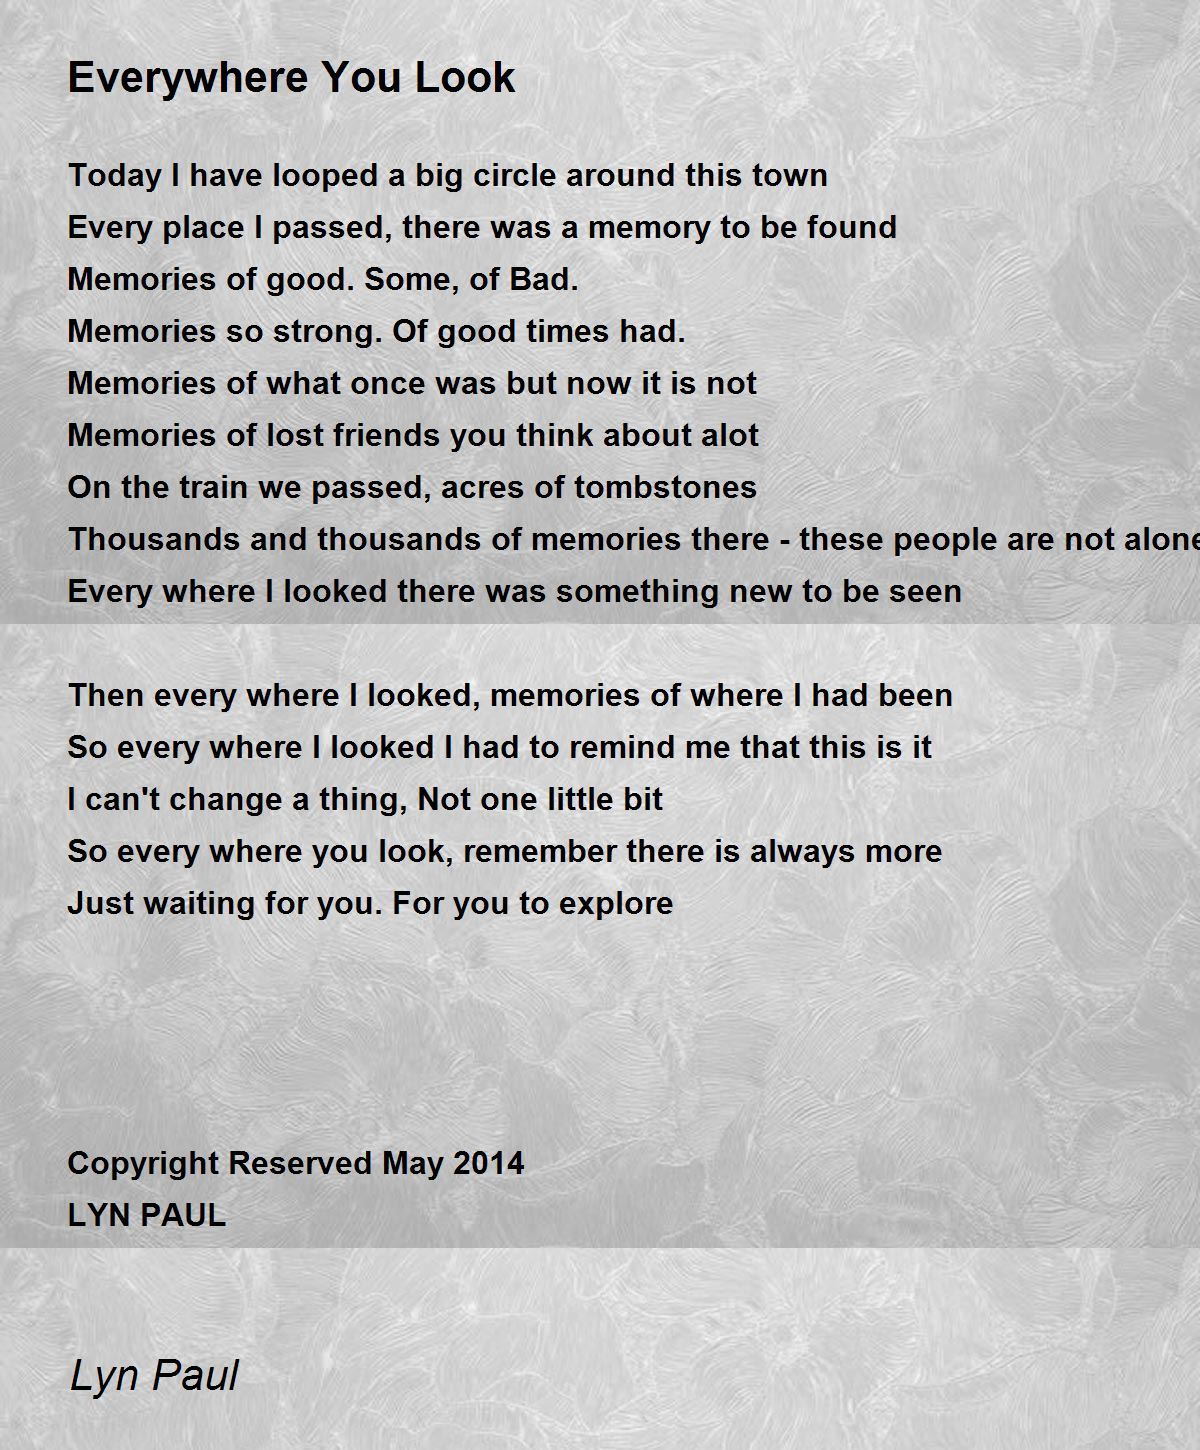 Everywhere You Look - Everywhere You Look Poem by Lyn Paul